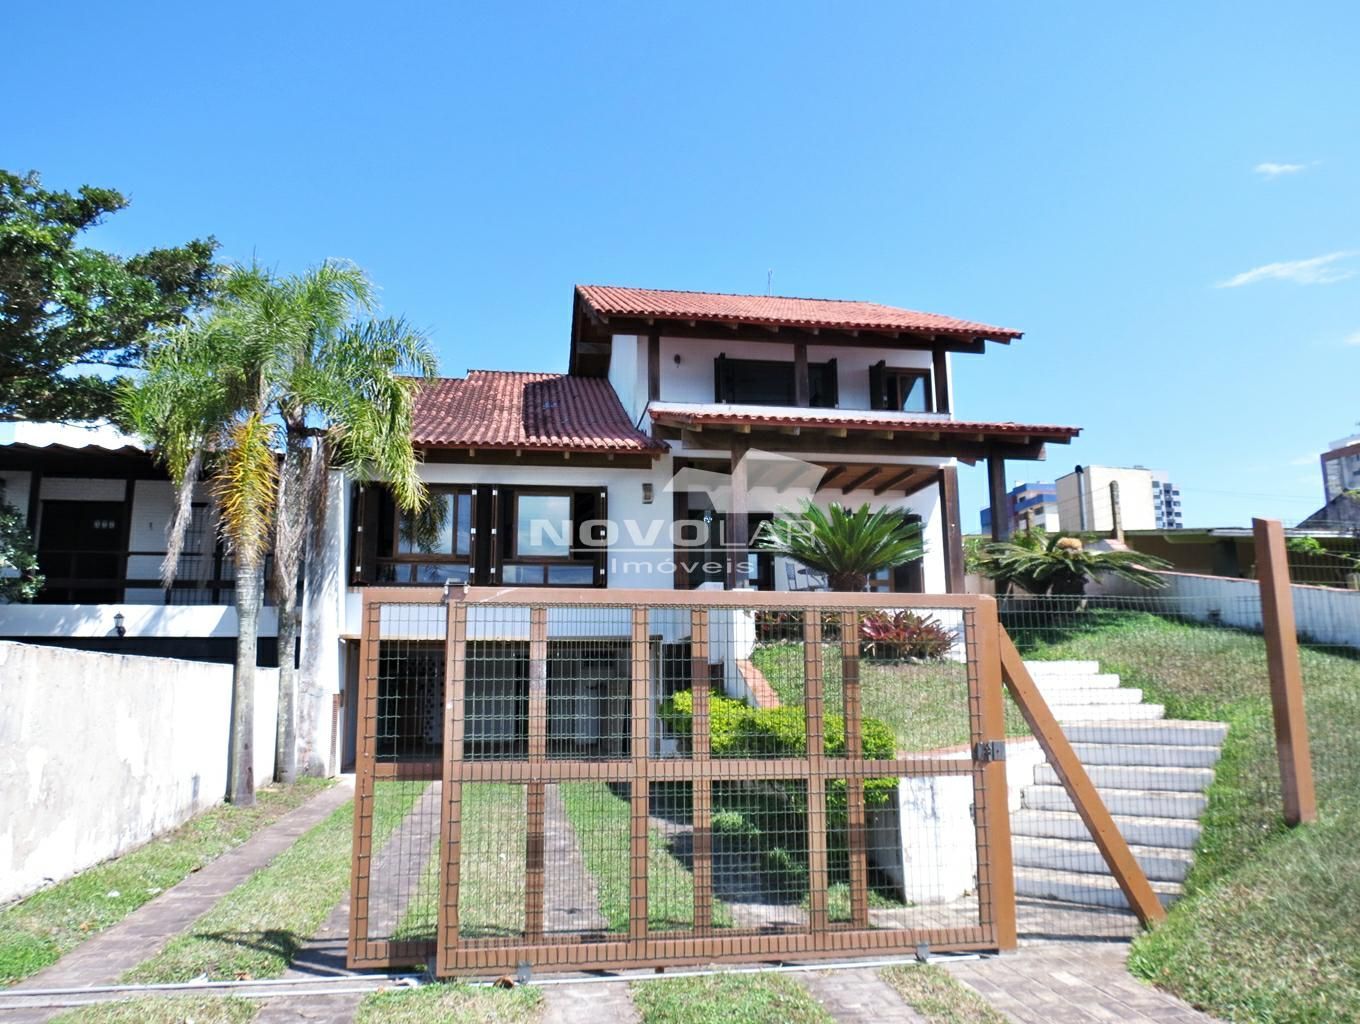 Casa com 6 dormitórios em Torres, no bairro Predial à venda